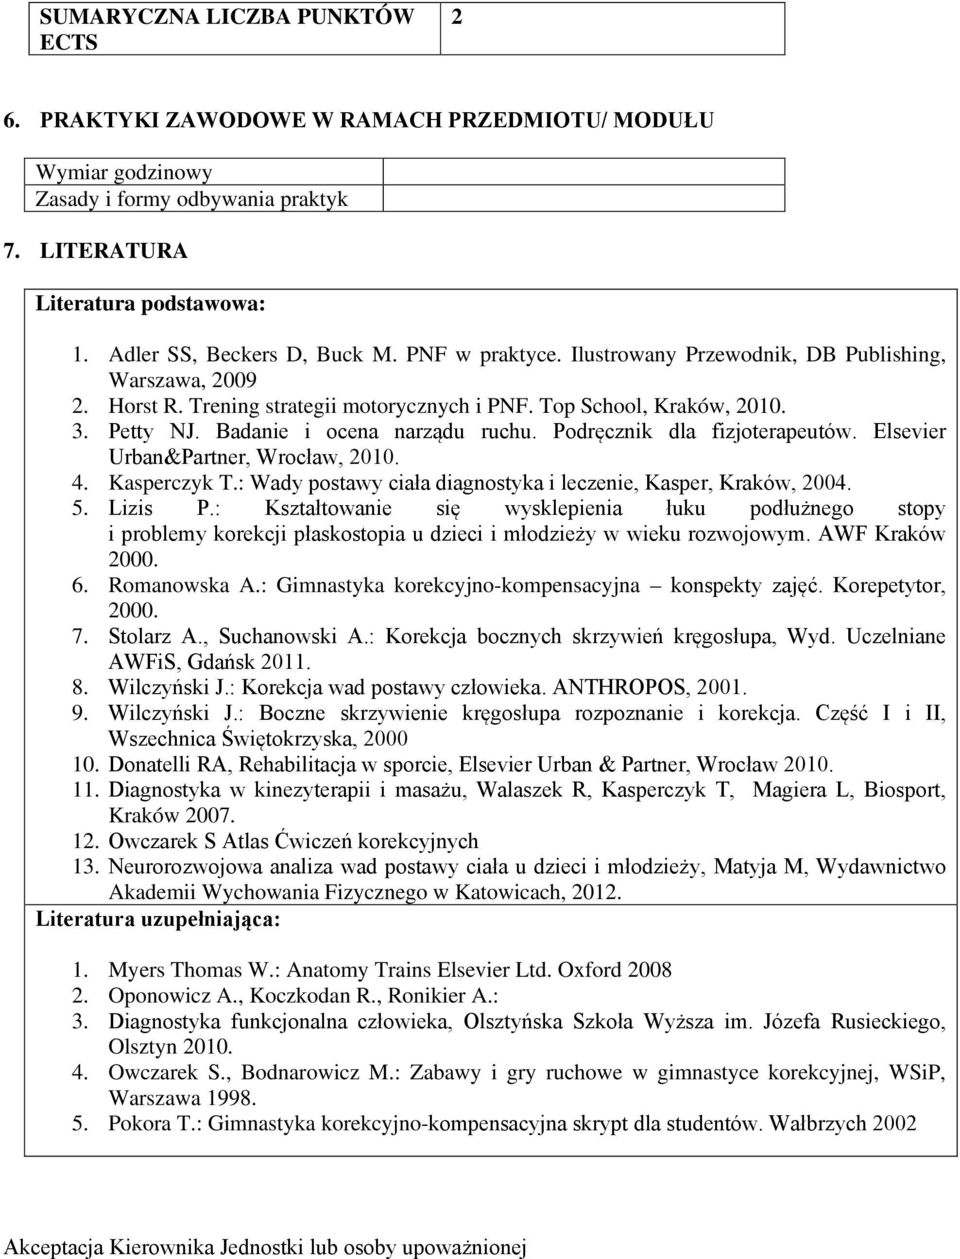 Podręcznik dla fizjoterapeutów. Elsevier Urban&Partner, Wrocław, 2010. 4. Kasperczyk T.: Wady postawy ciała diagnostyka i leczenie, Kasper, Kraków, 2004. 5. Lizis P.